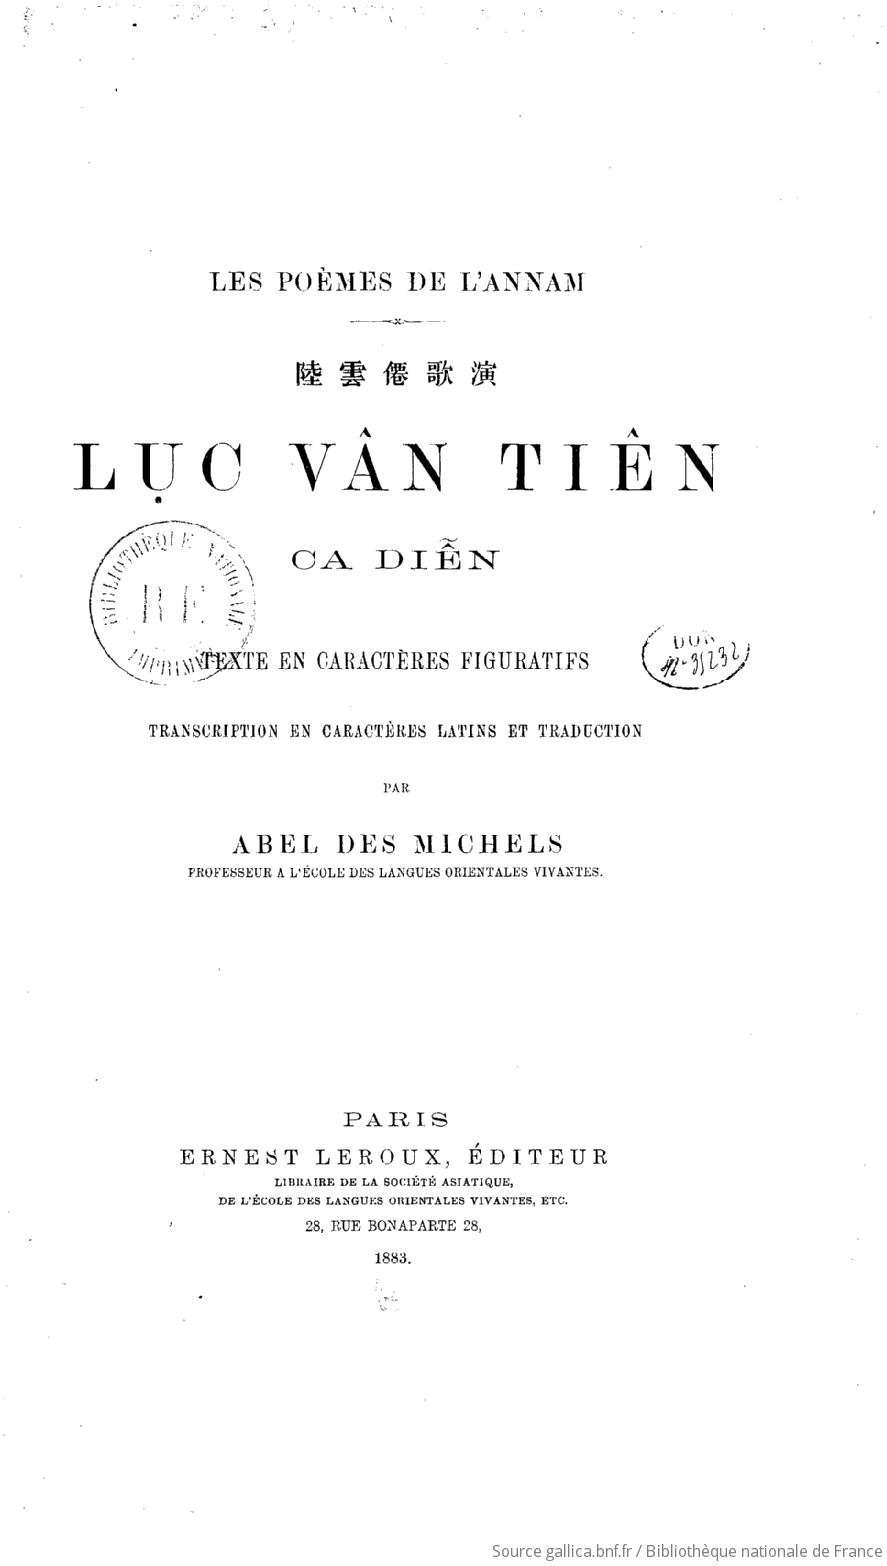 Luc Vân Tiên ca diên : les poèmes de l'Annam / [Nguyên Dinh Chiêu 